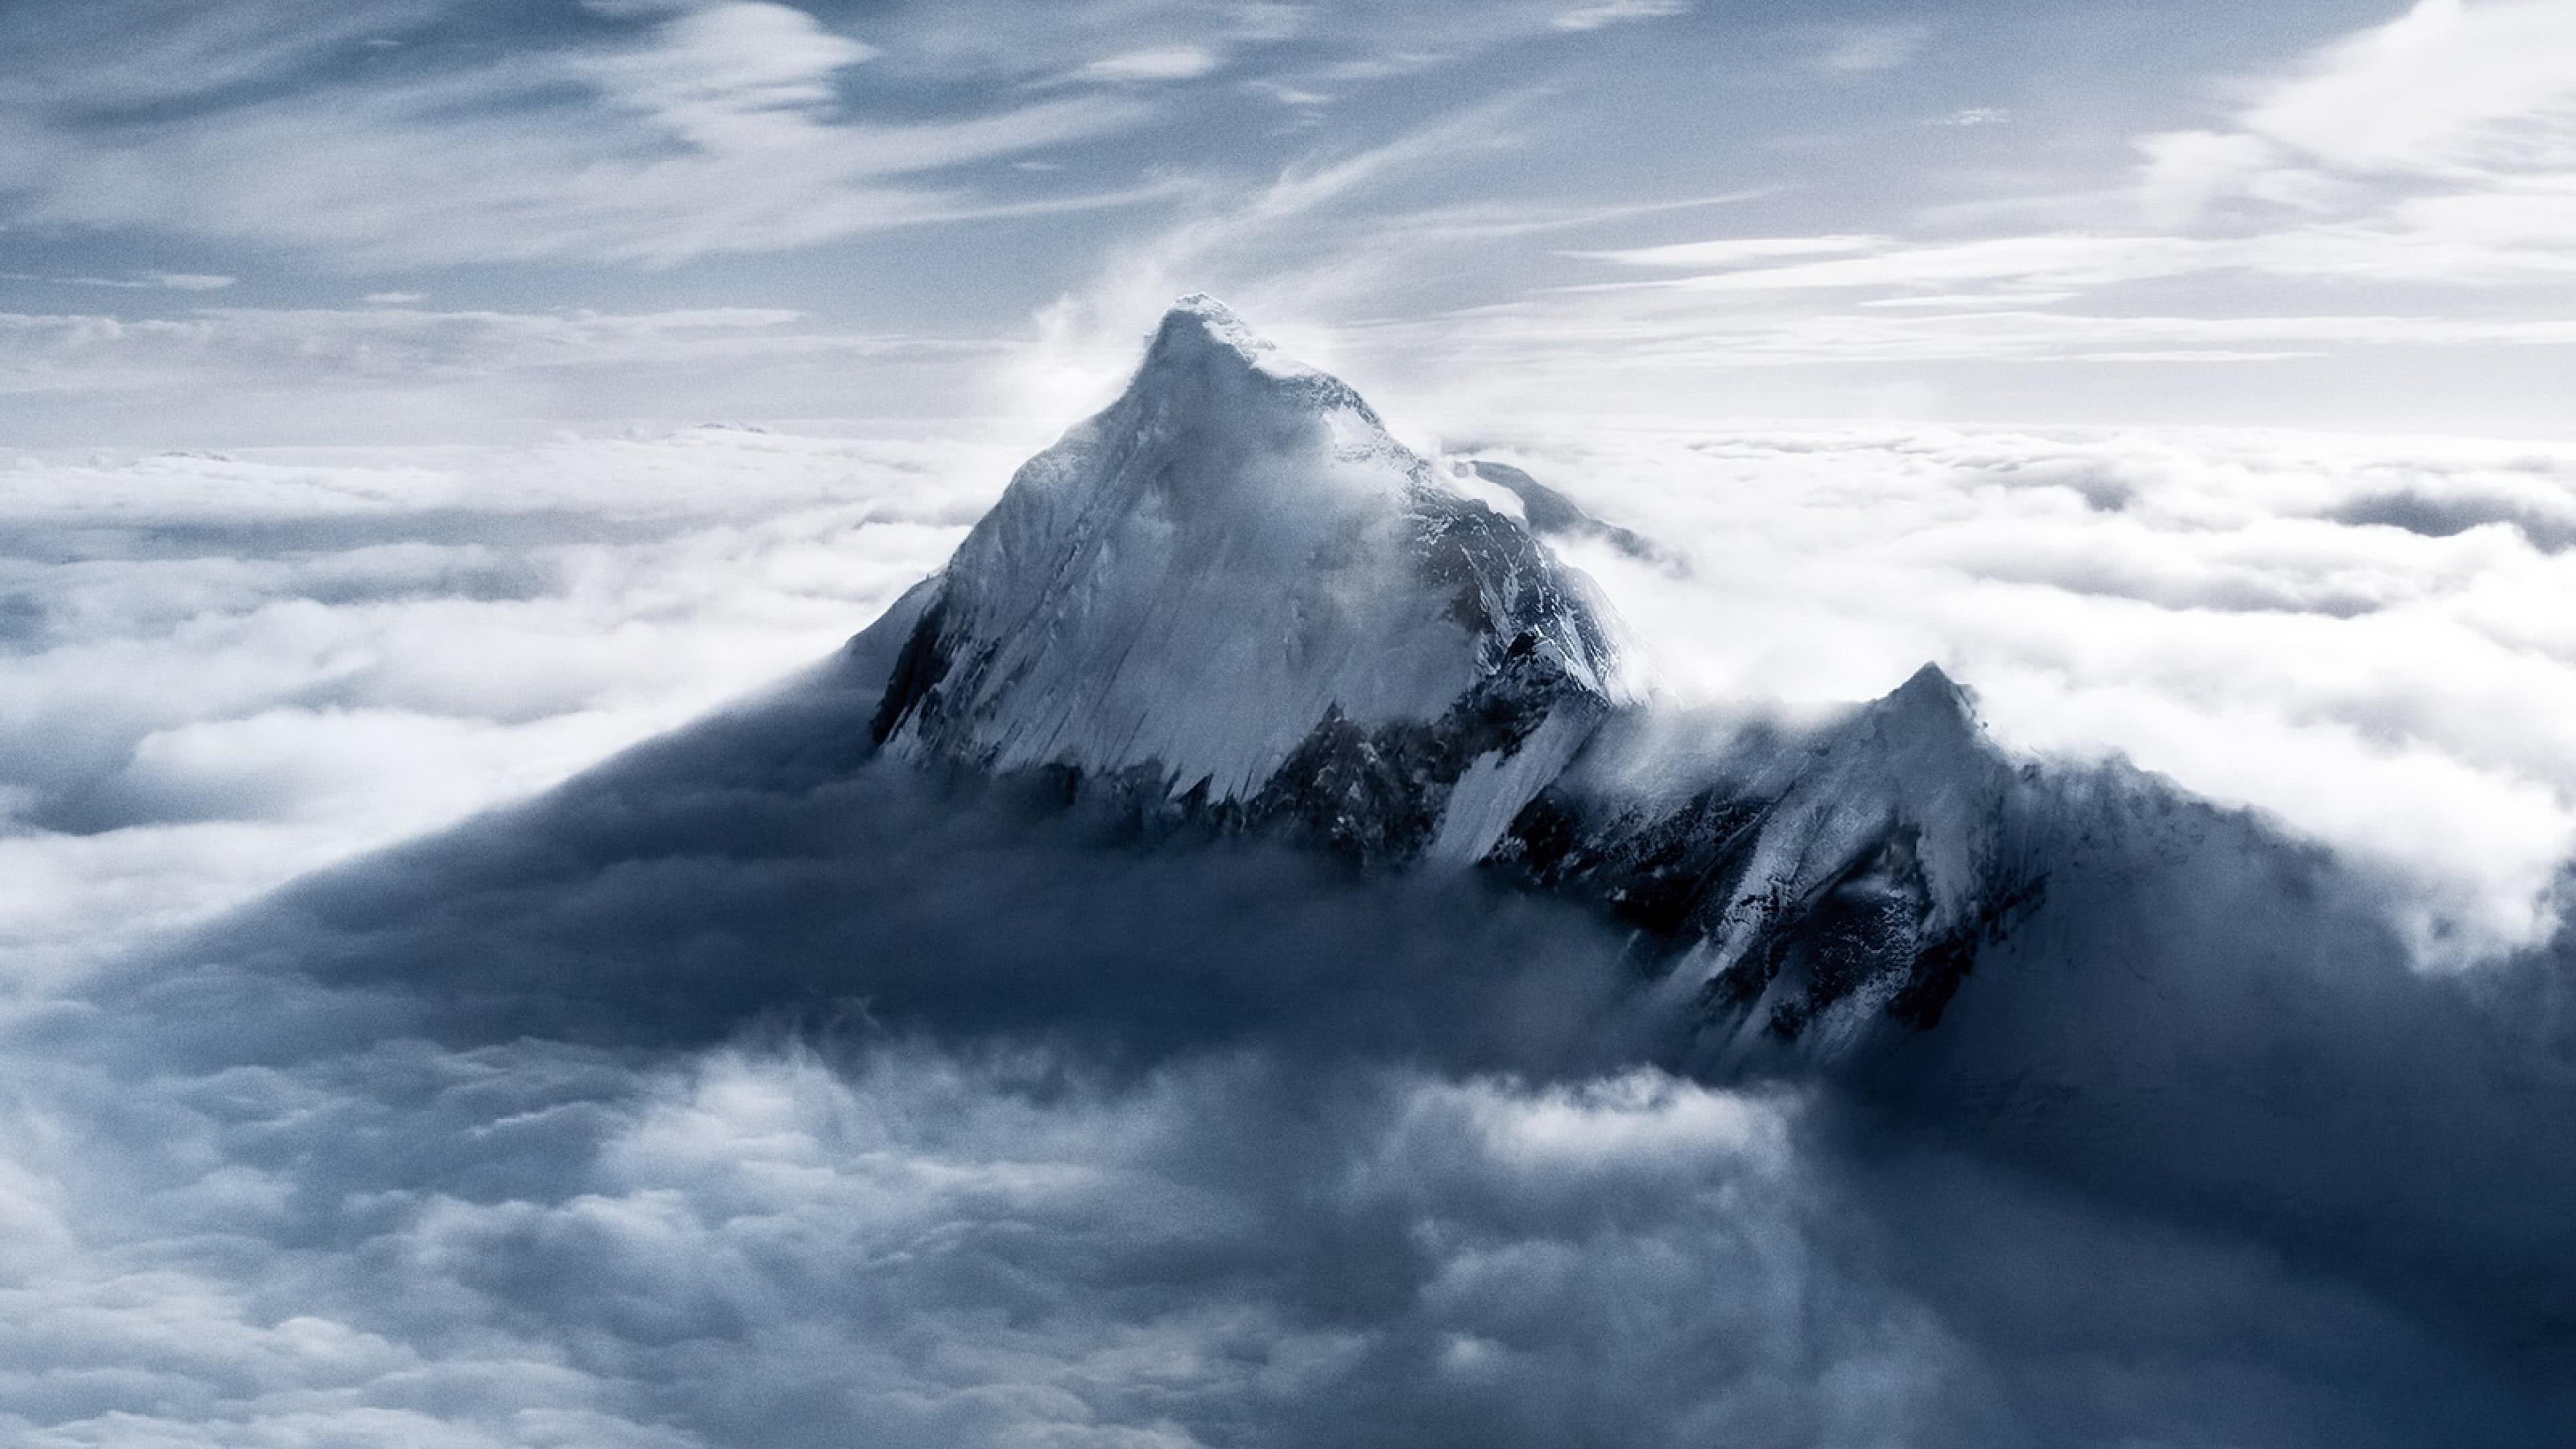 Mount Everest, Mahalangur Mountain Range, Himalayas, Nepal UHD 4K Wallpaper